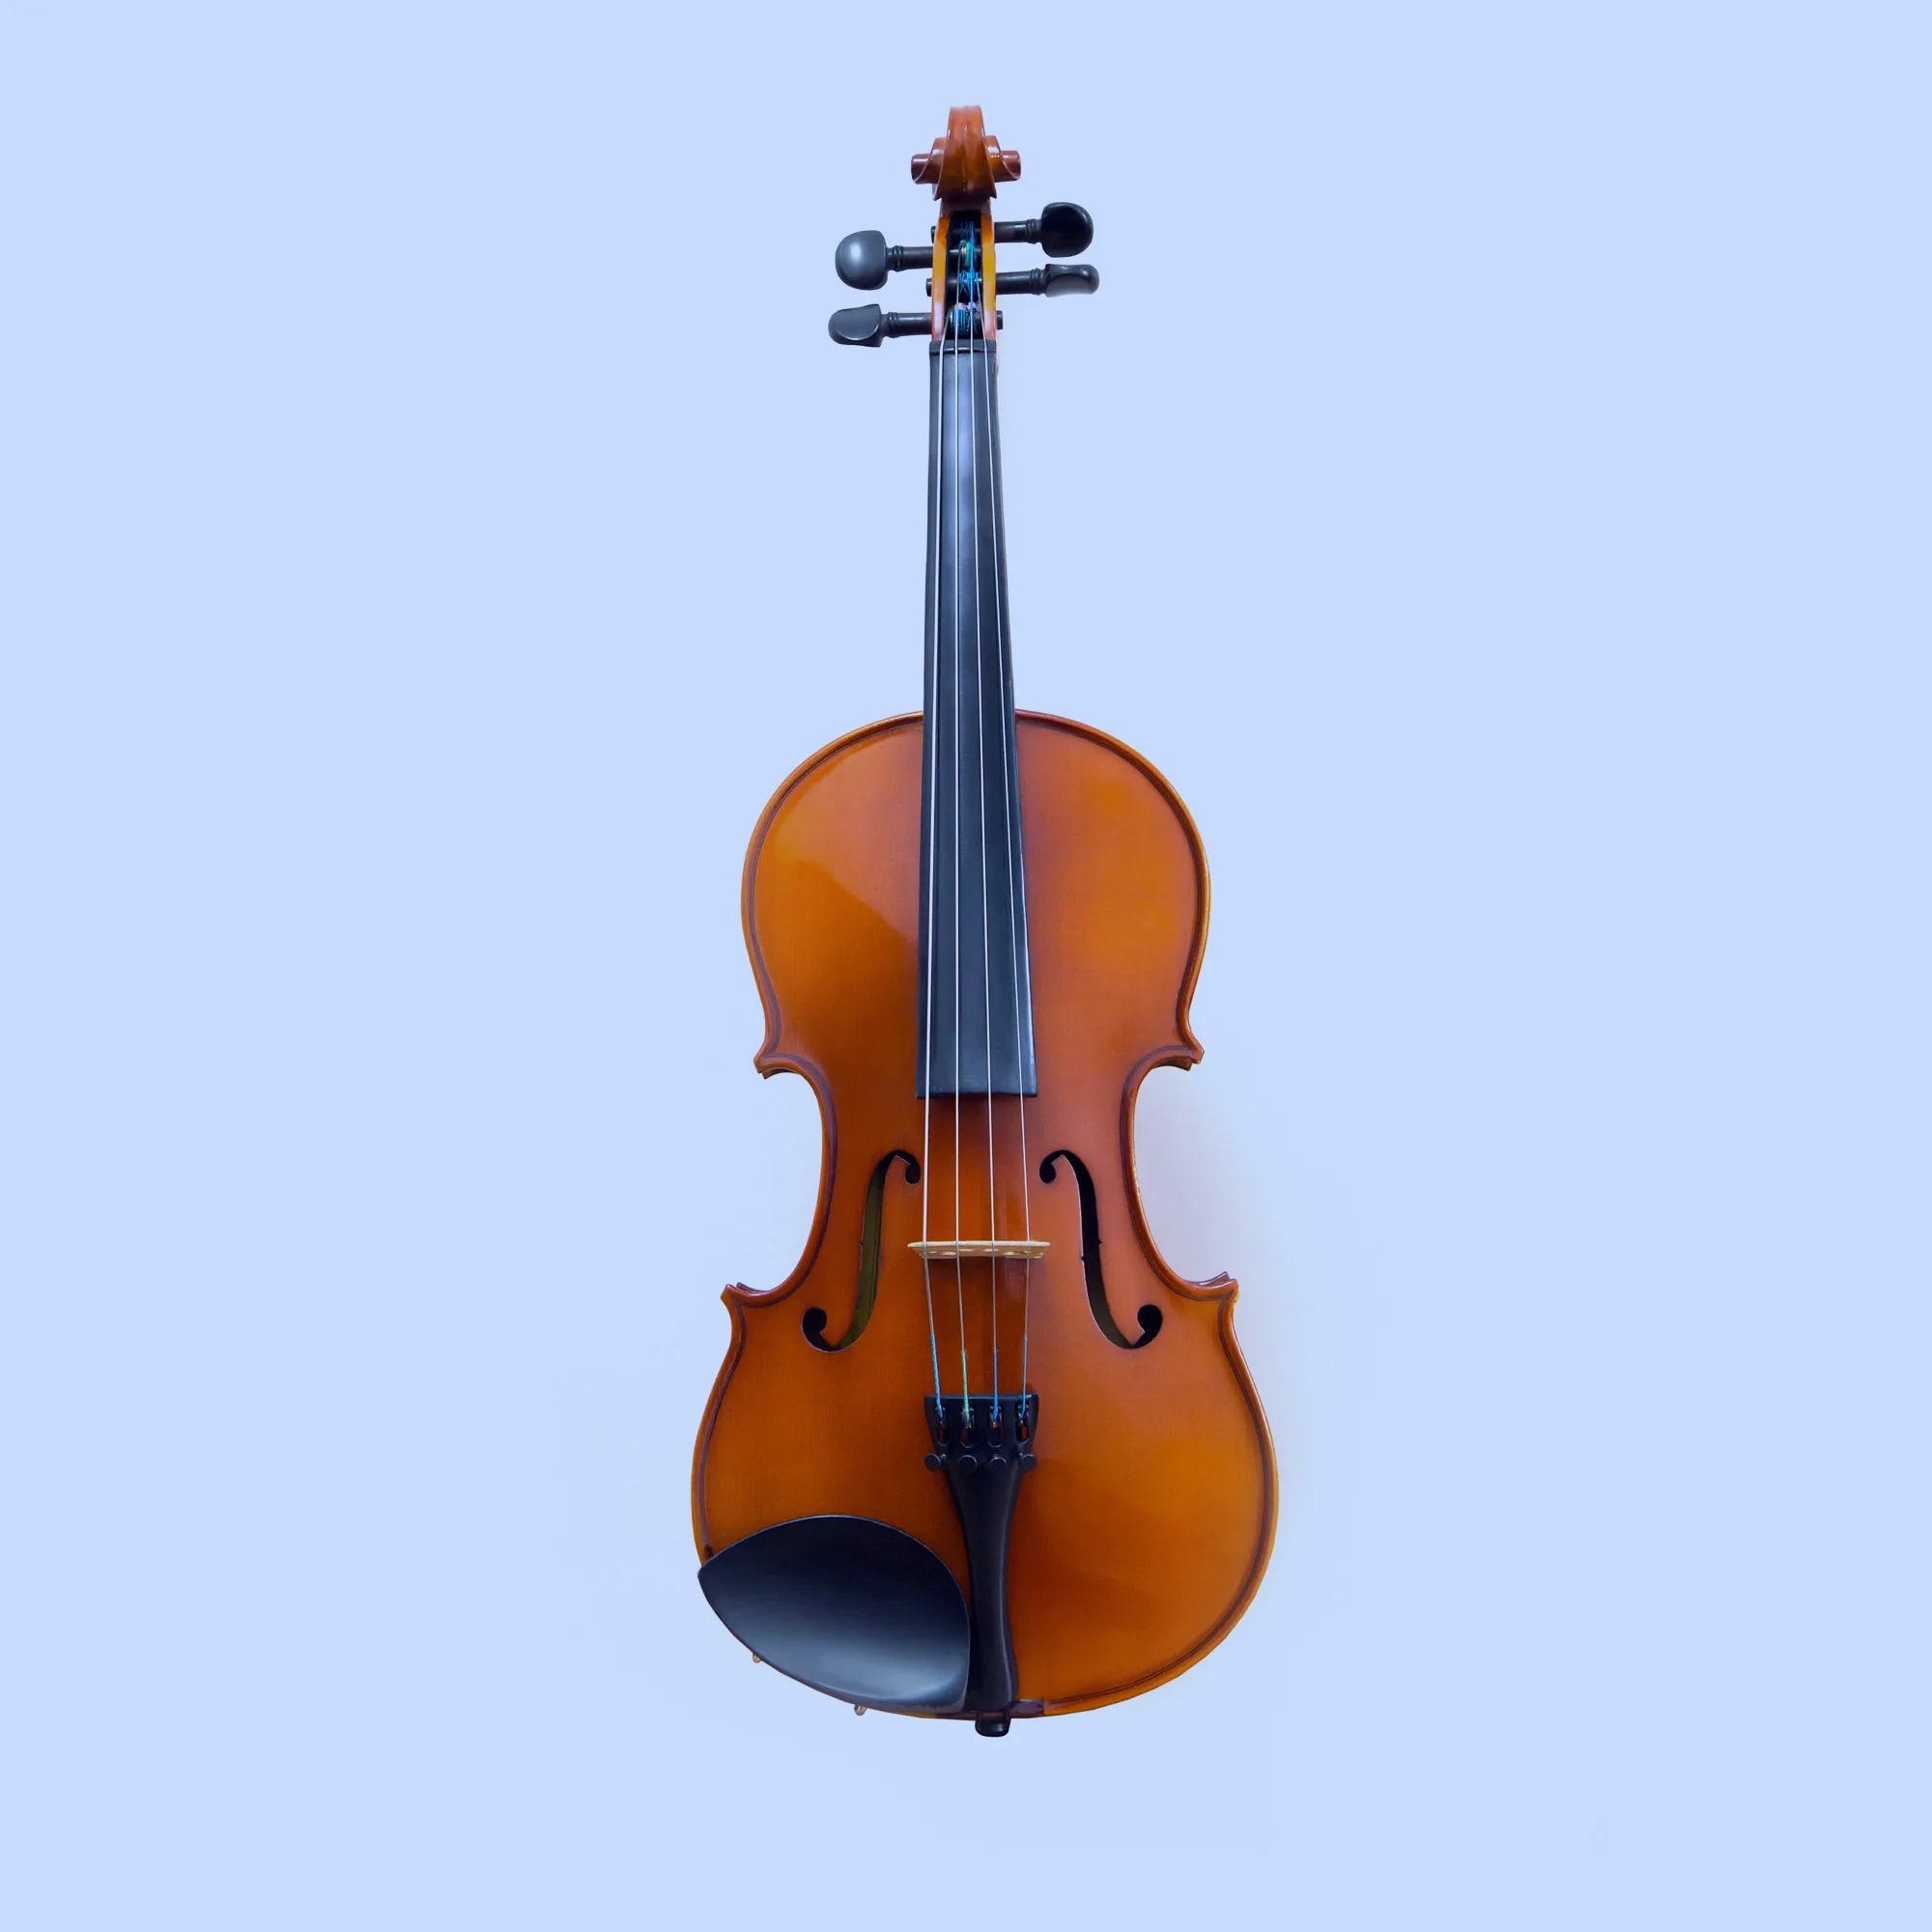 Insturment - Violine Viola mit Link auf Unterichtseite